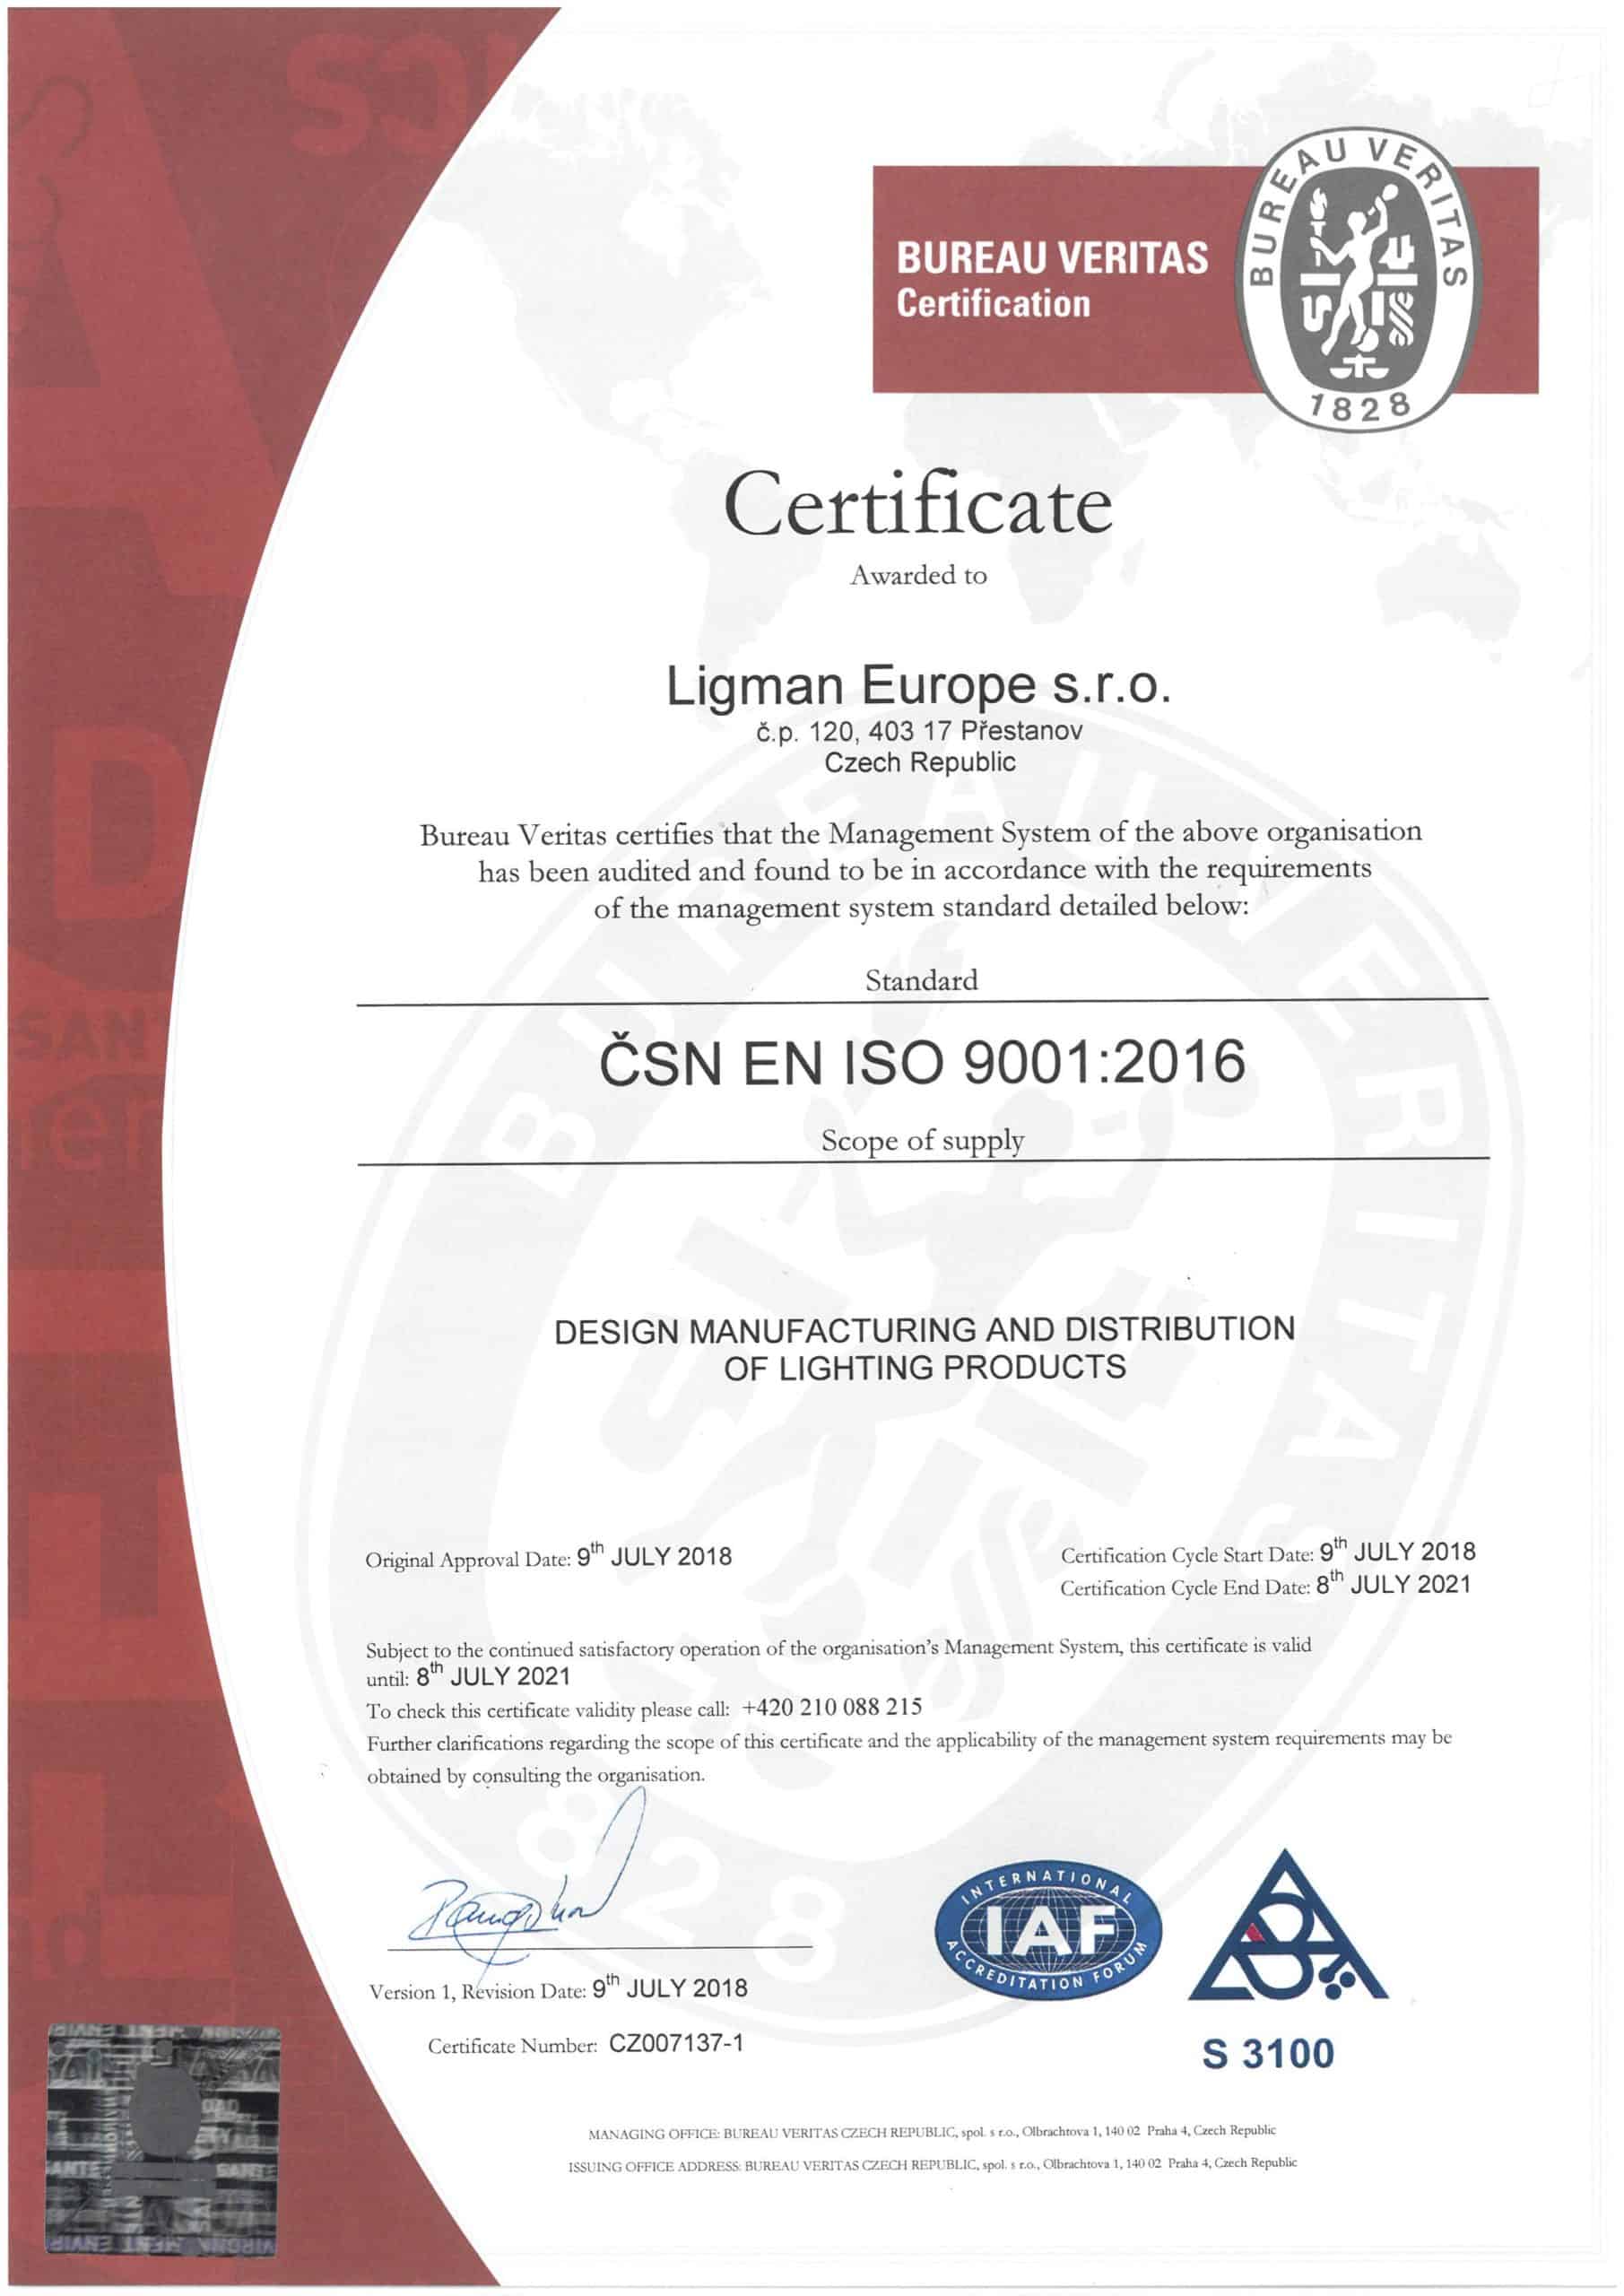 LLEU - ISO 9001